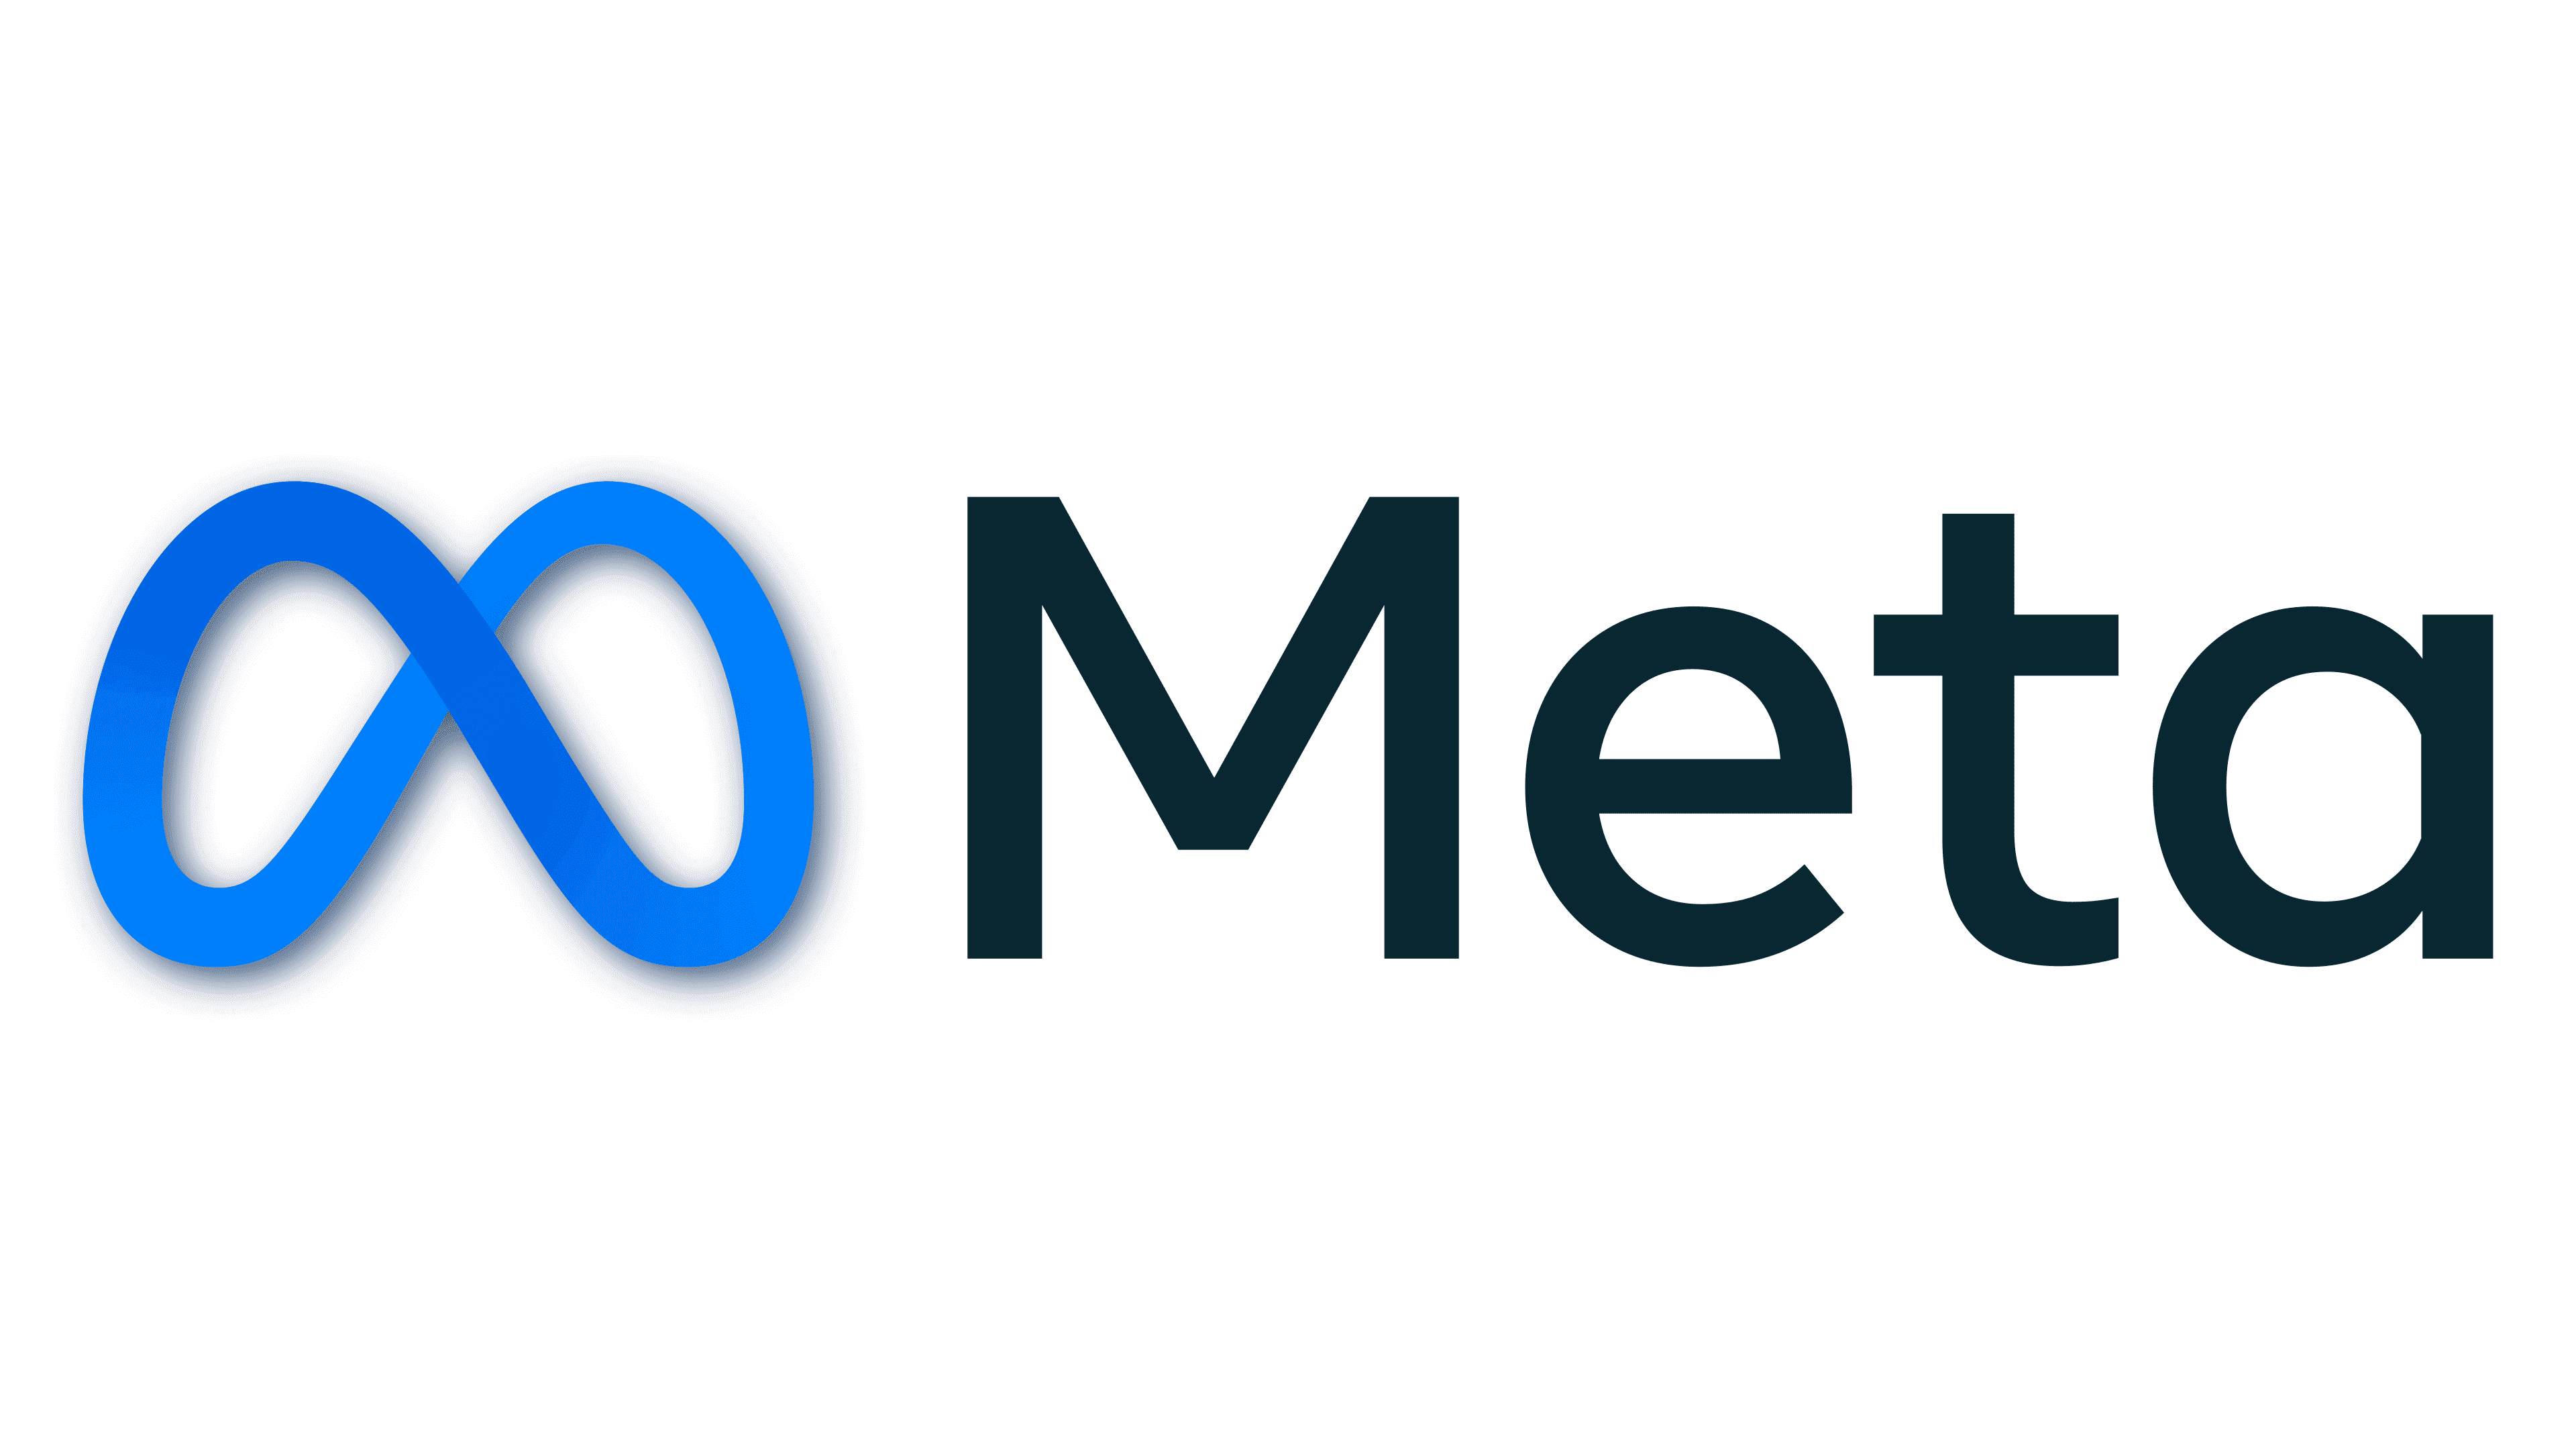 Meta logo PNG